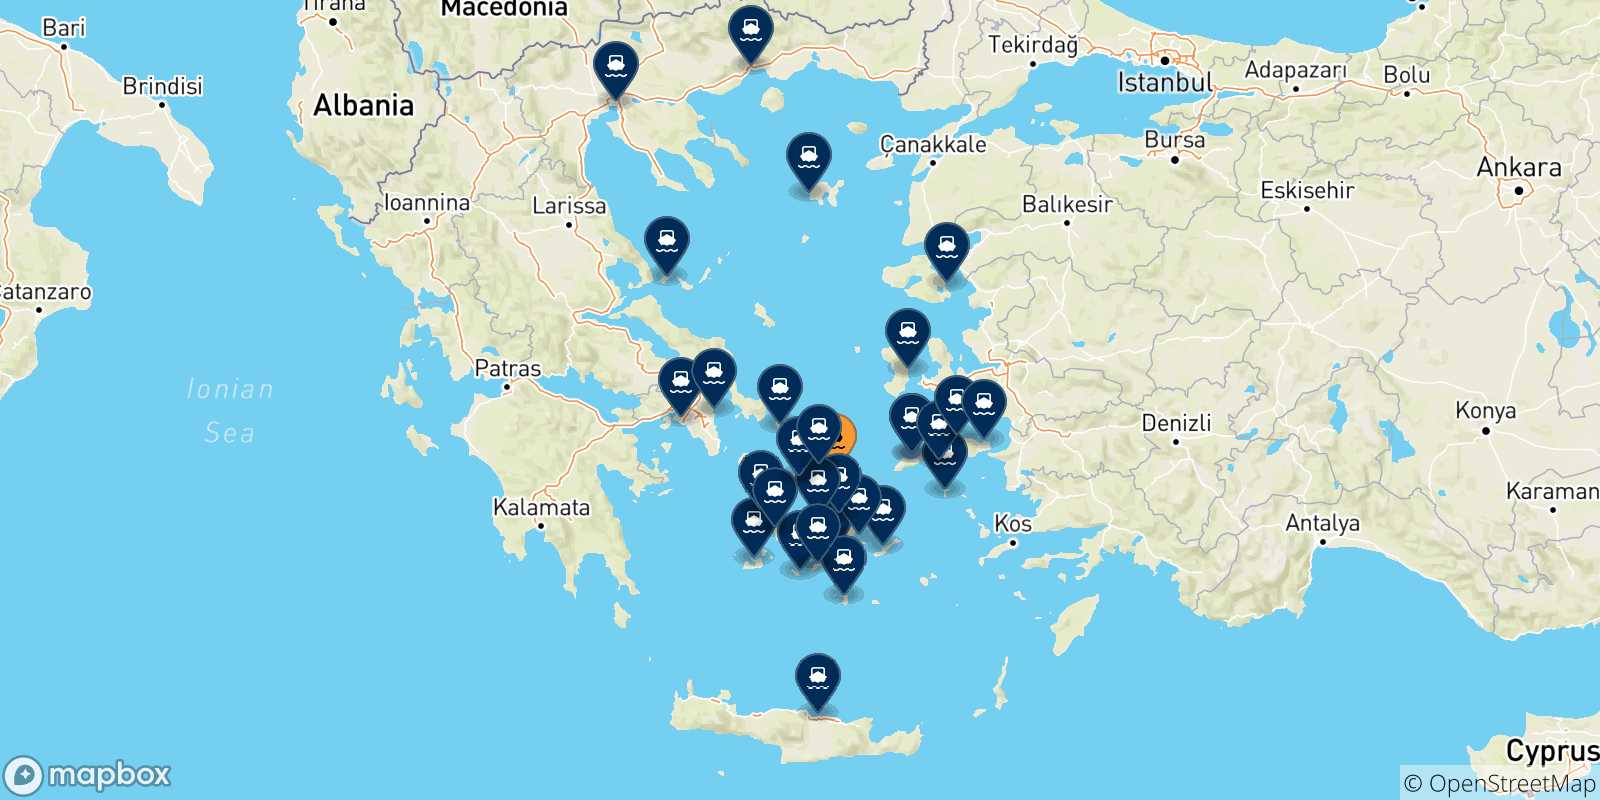 Mappa delle possibili rotte tra Mykonos e la Grecia